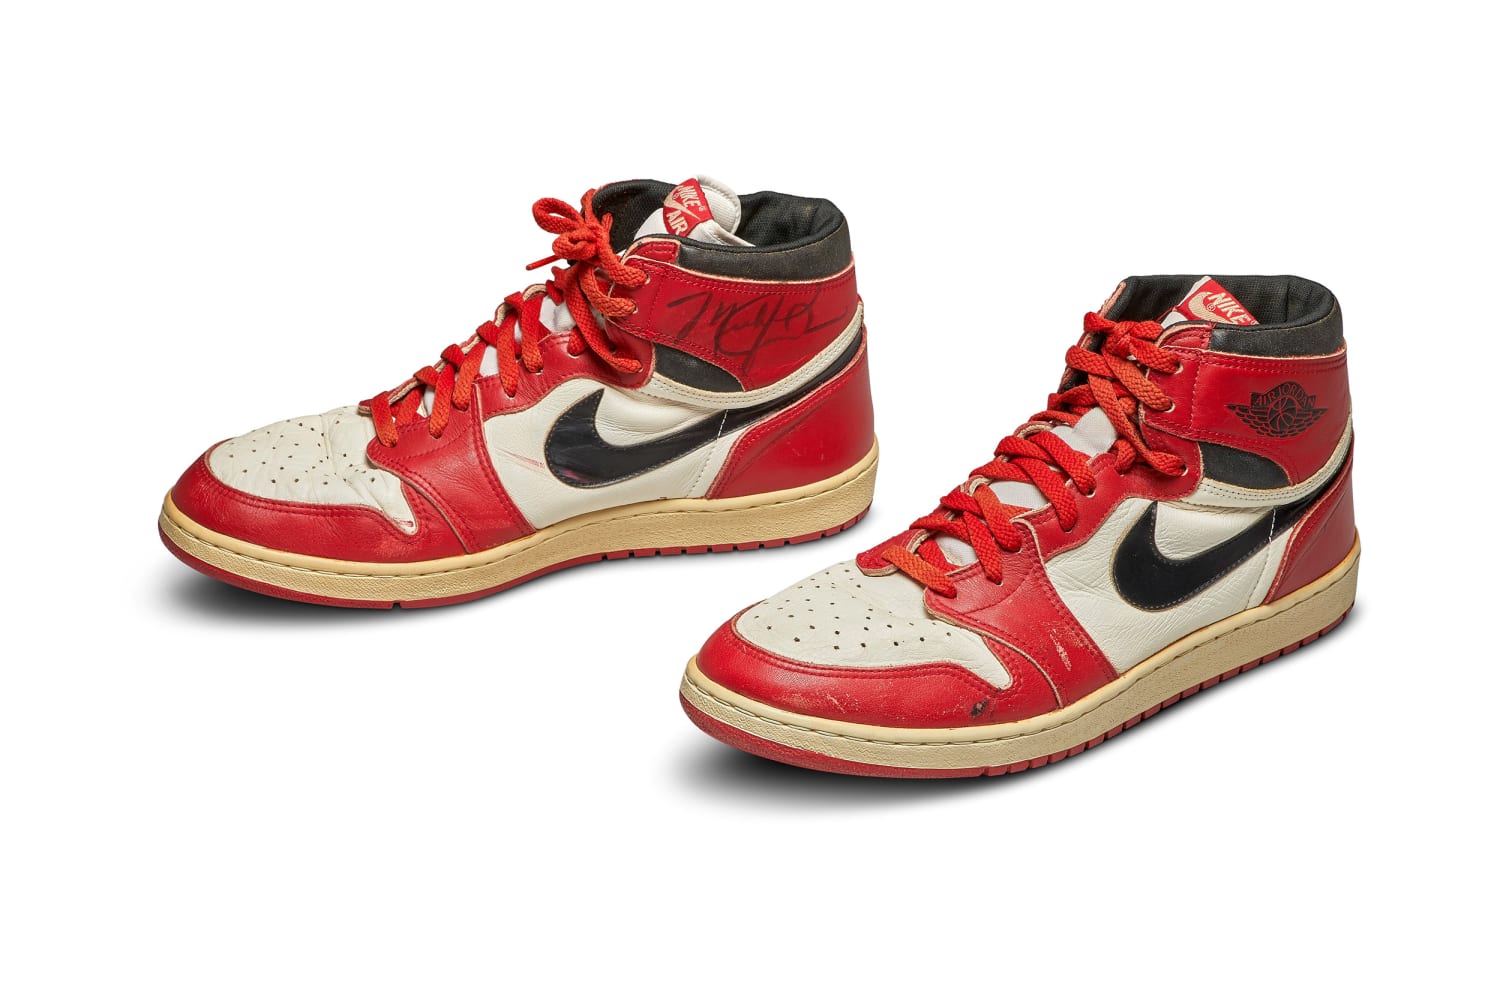 Michael Jordan sneakers sell for $560 